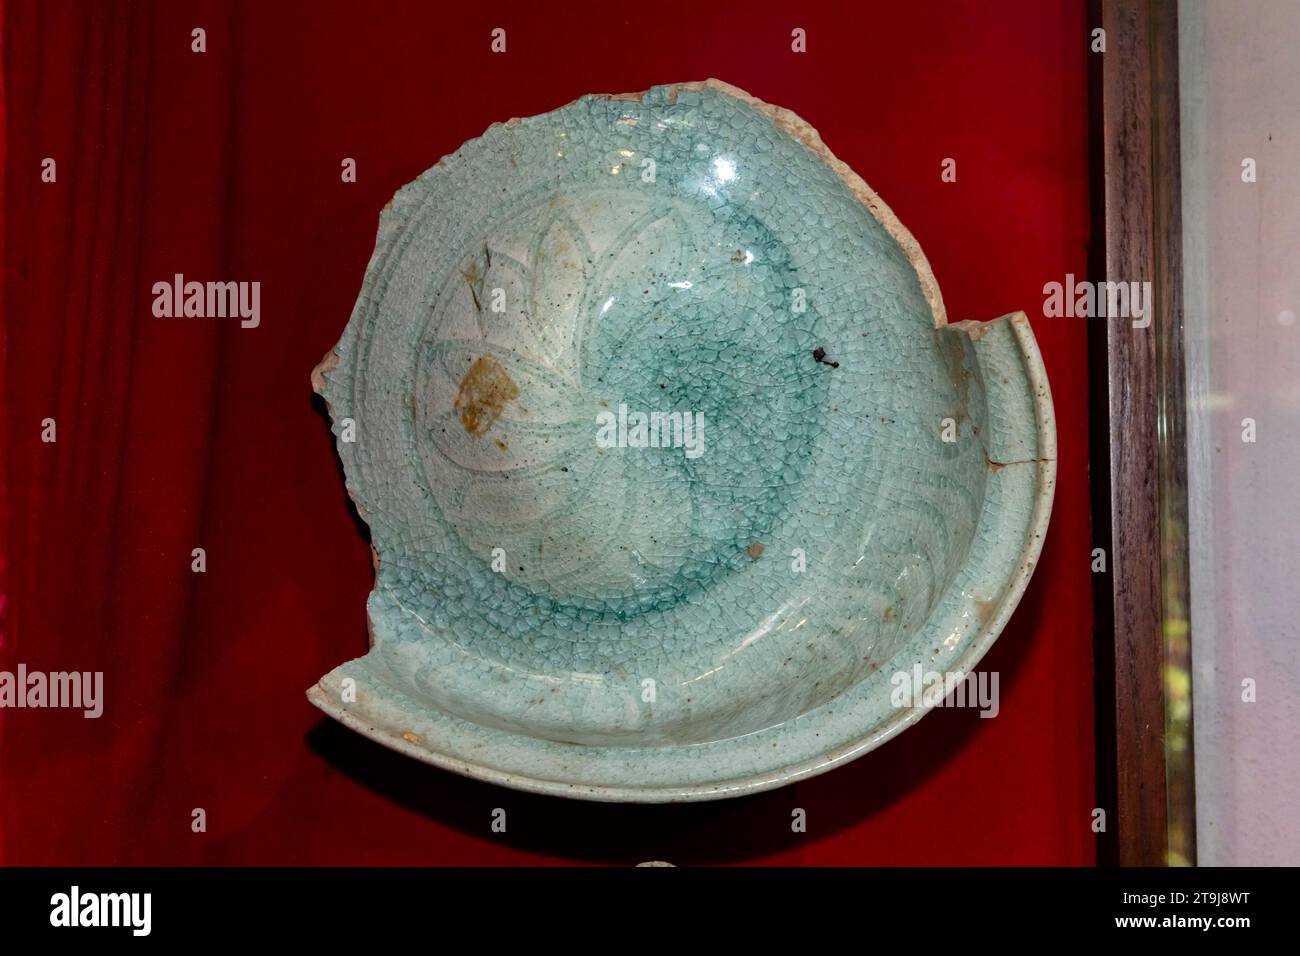 Esposizione di antiche ceramiche, museo del centro di studio e conservazione del forno di Sangkhalok, si Satchanalai, Sukhothai, Thailandia, Sud-est asiatico, Asia Foto Stock